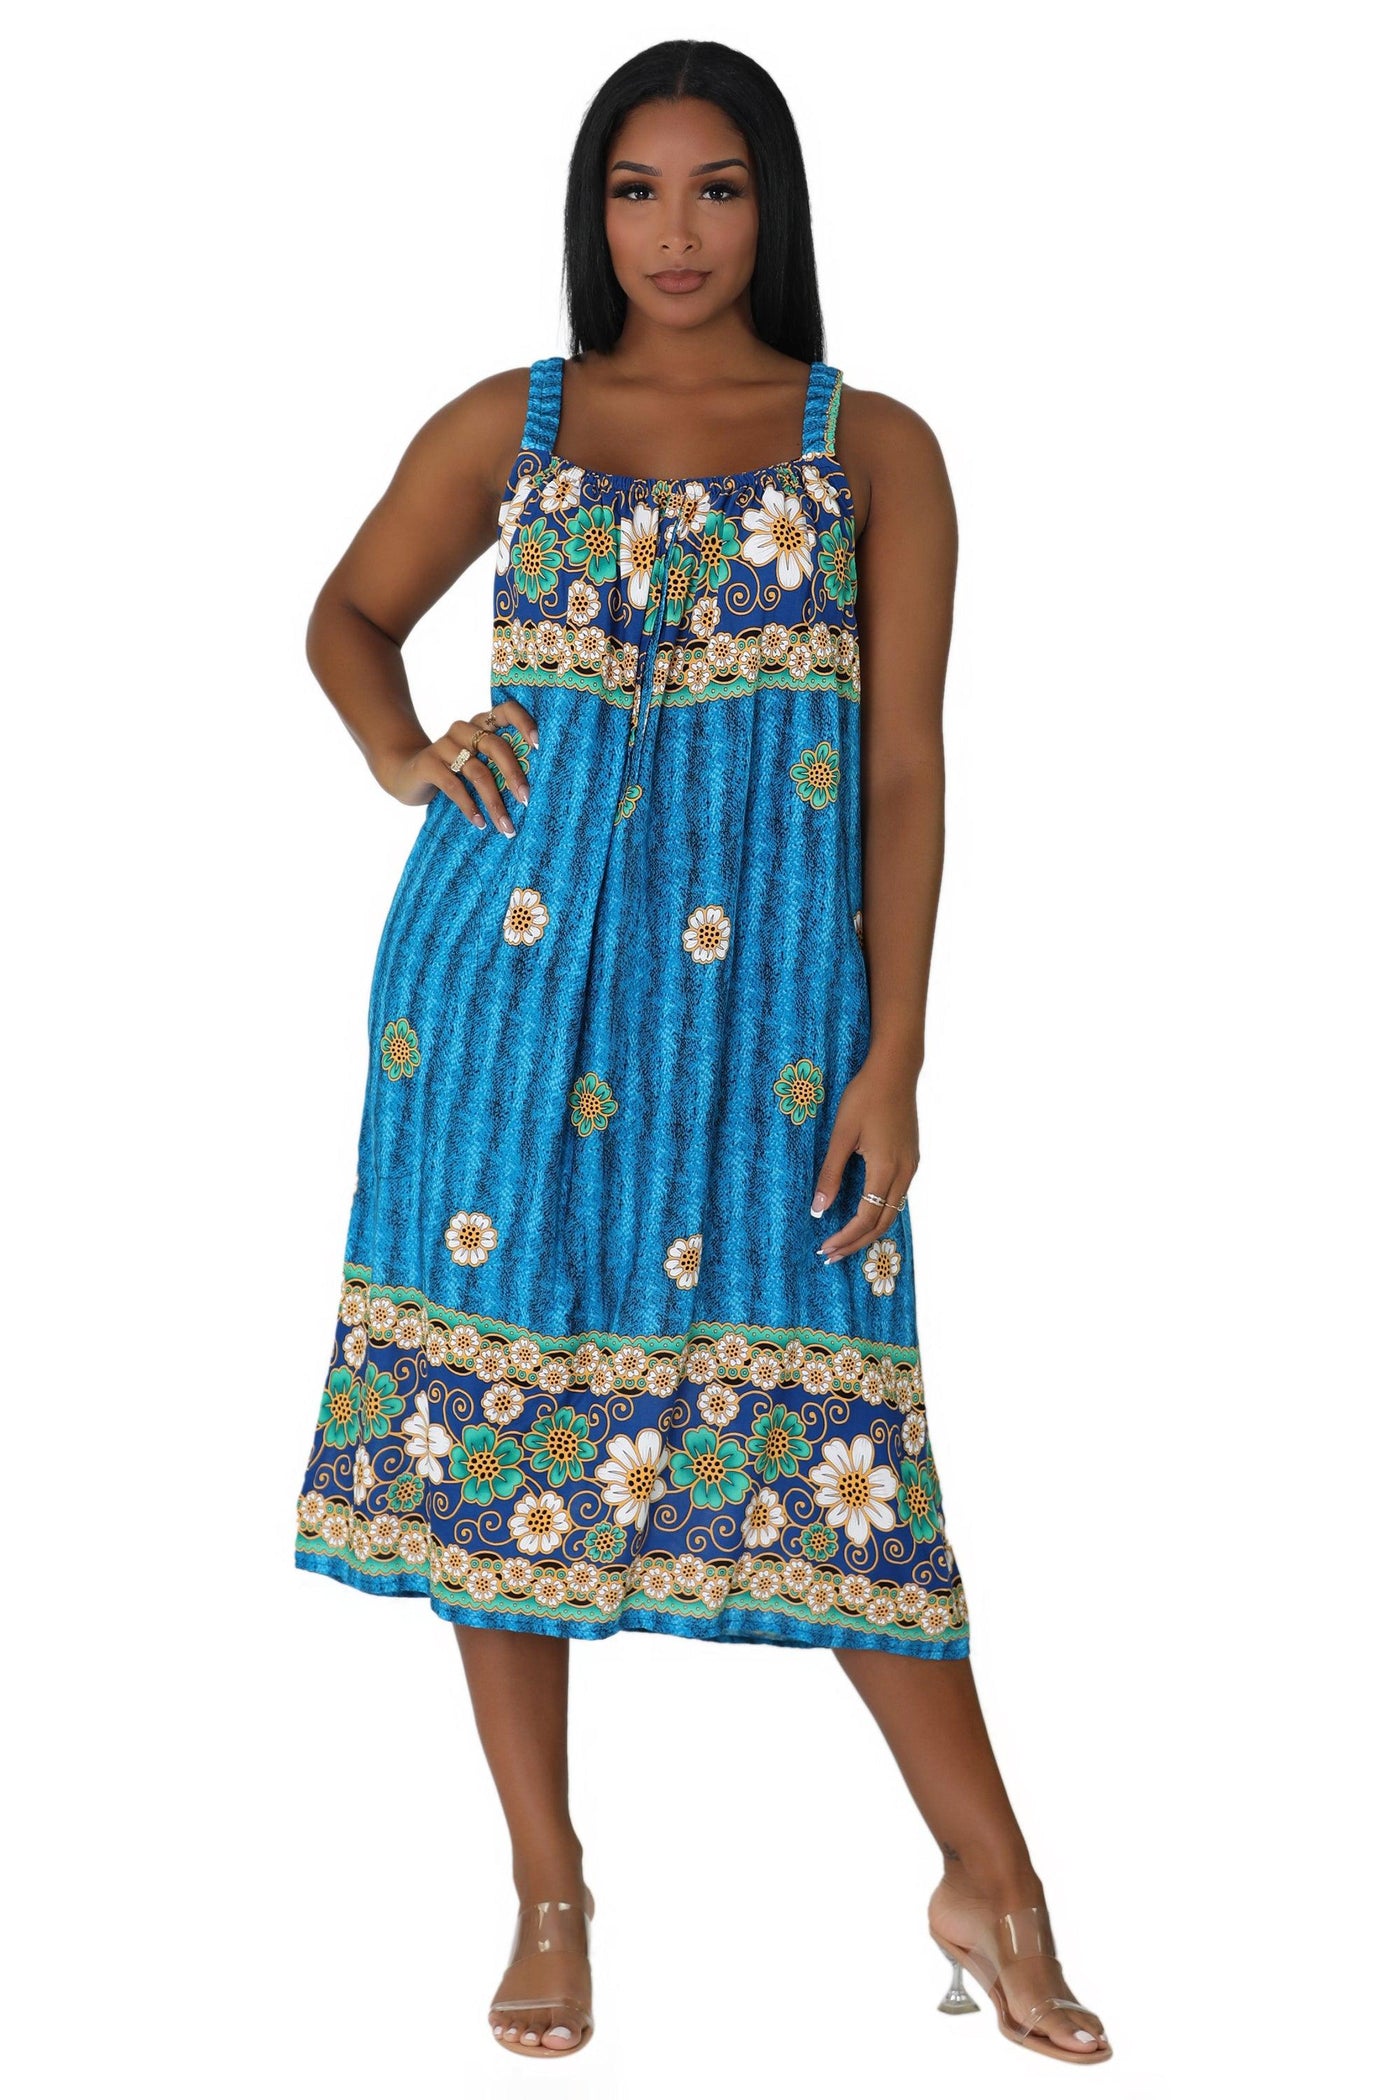 Sunflower Print Resort Dress TH-2027A